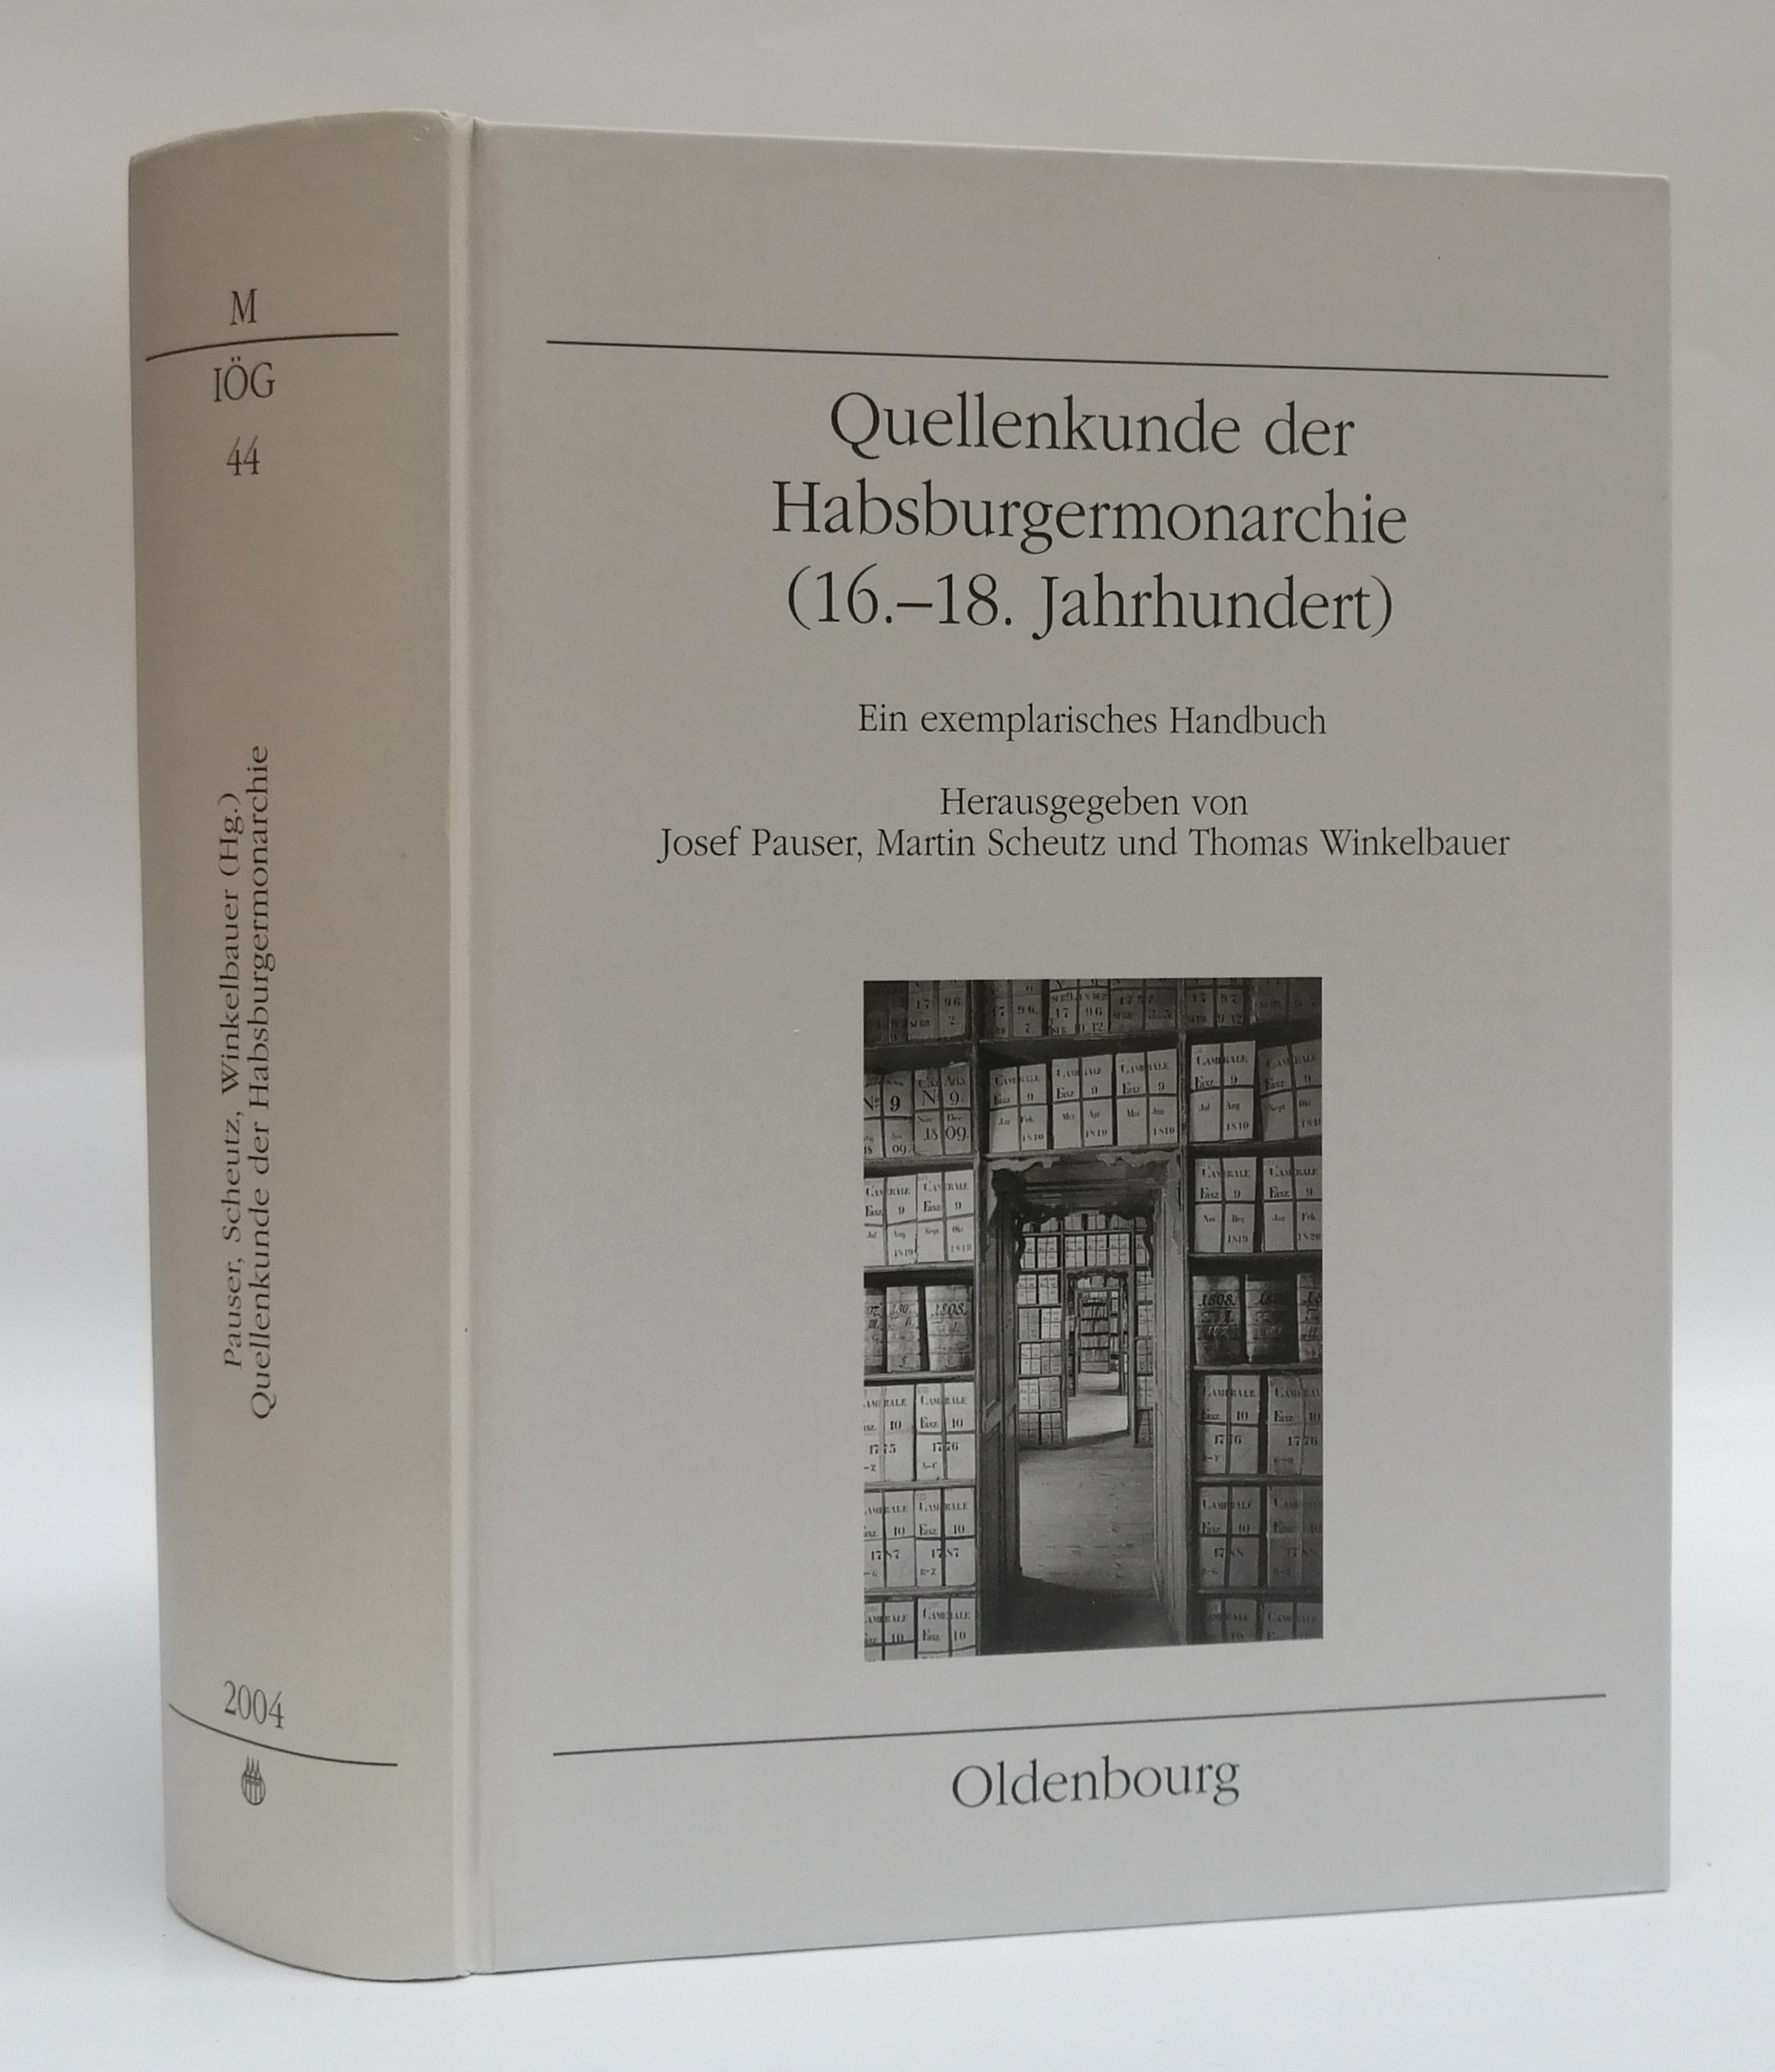 Quellenkunde der Habsburgermonarchie (16.-18. Jahrhundert). Ein exemplarisches Handbuch. Mit s/w-Abb. - Pauser, Josef / Scheutz, Martin / Winkelbauer, Thomas (Hg.)